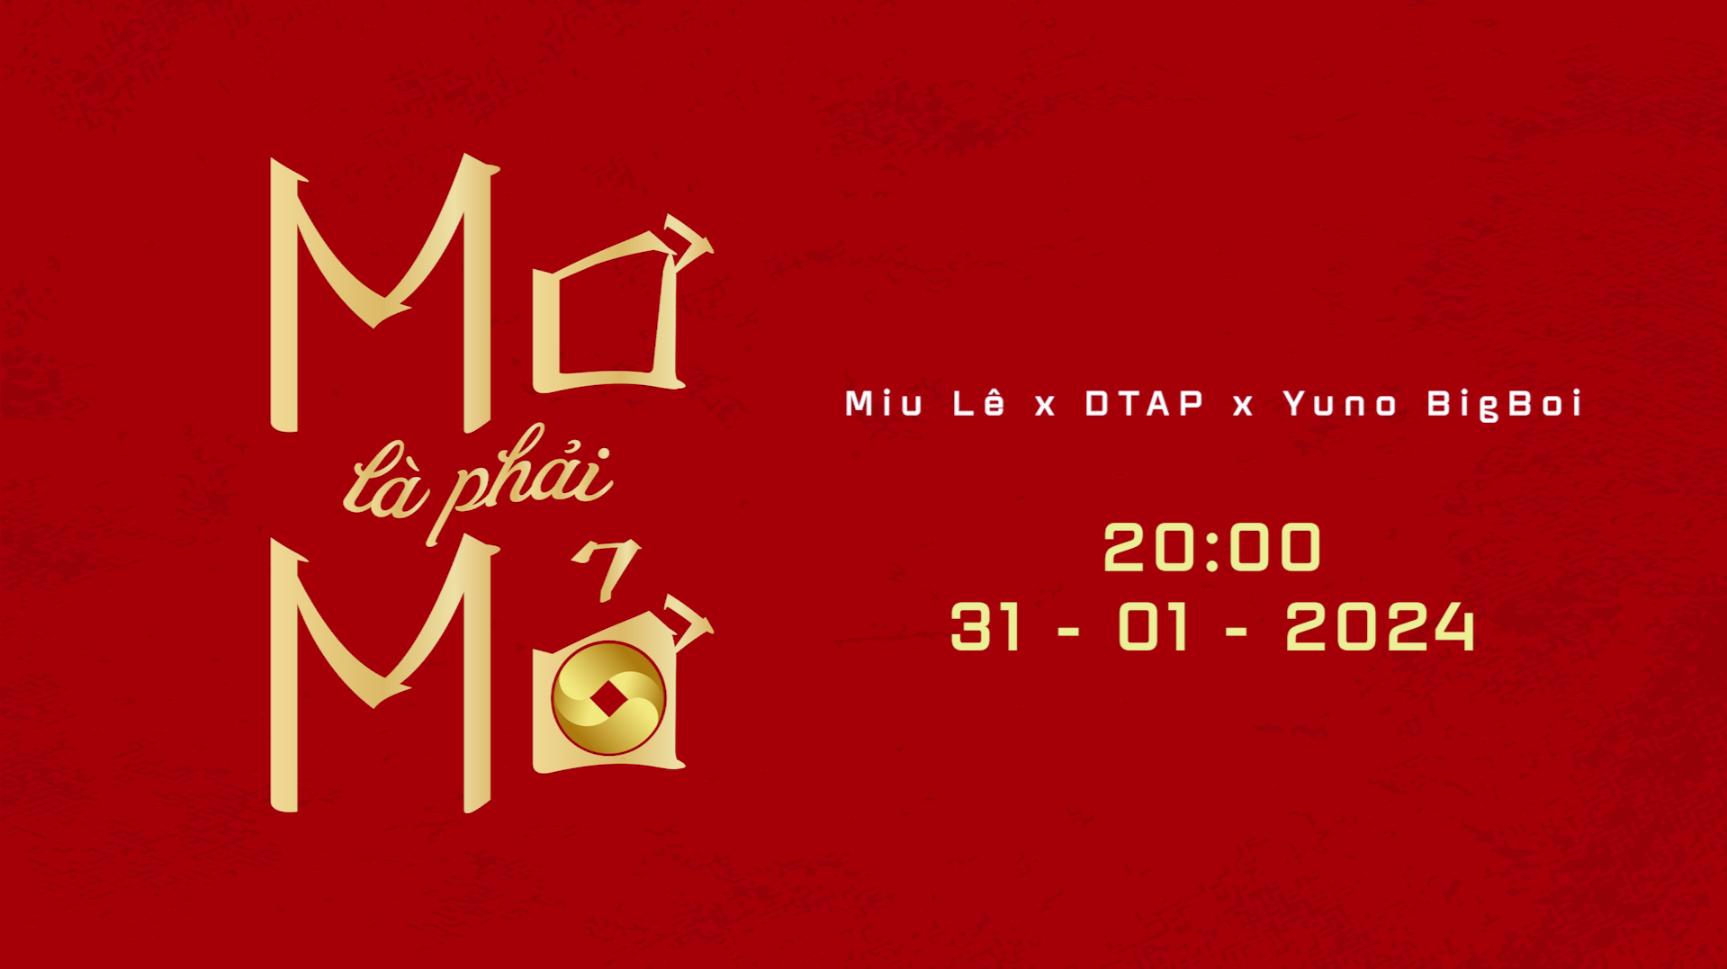 Pic 7 Thông tin ngày trình làng của MV Mơ là phải Mở Miu Lê sa chân tại tiệm Bói Mơ của rapper Yuno Bigboi